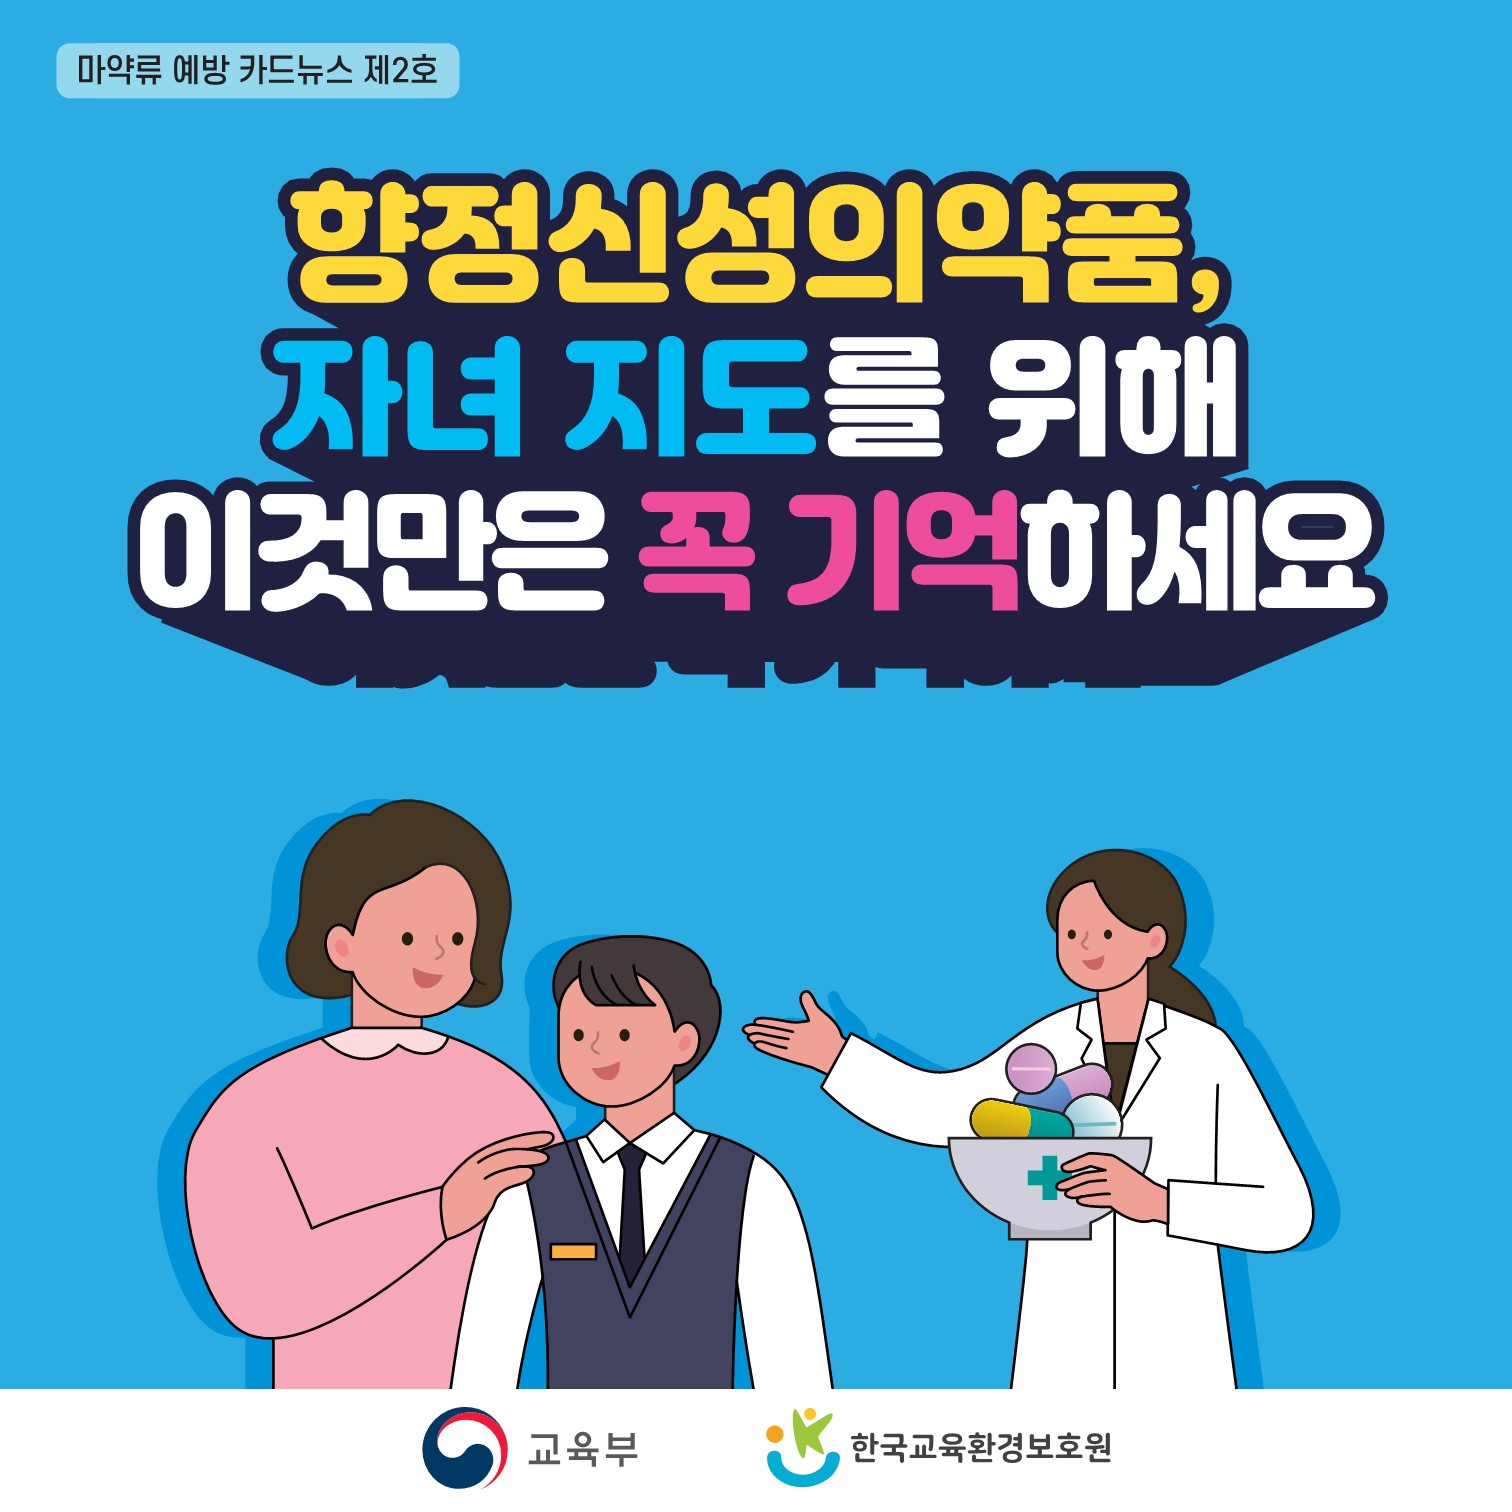 01. 마약류 예방교육 카드뉴스 제2호_1